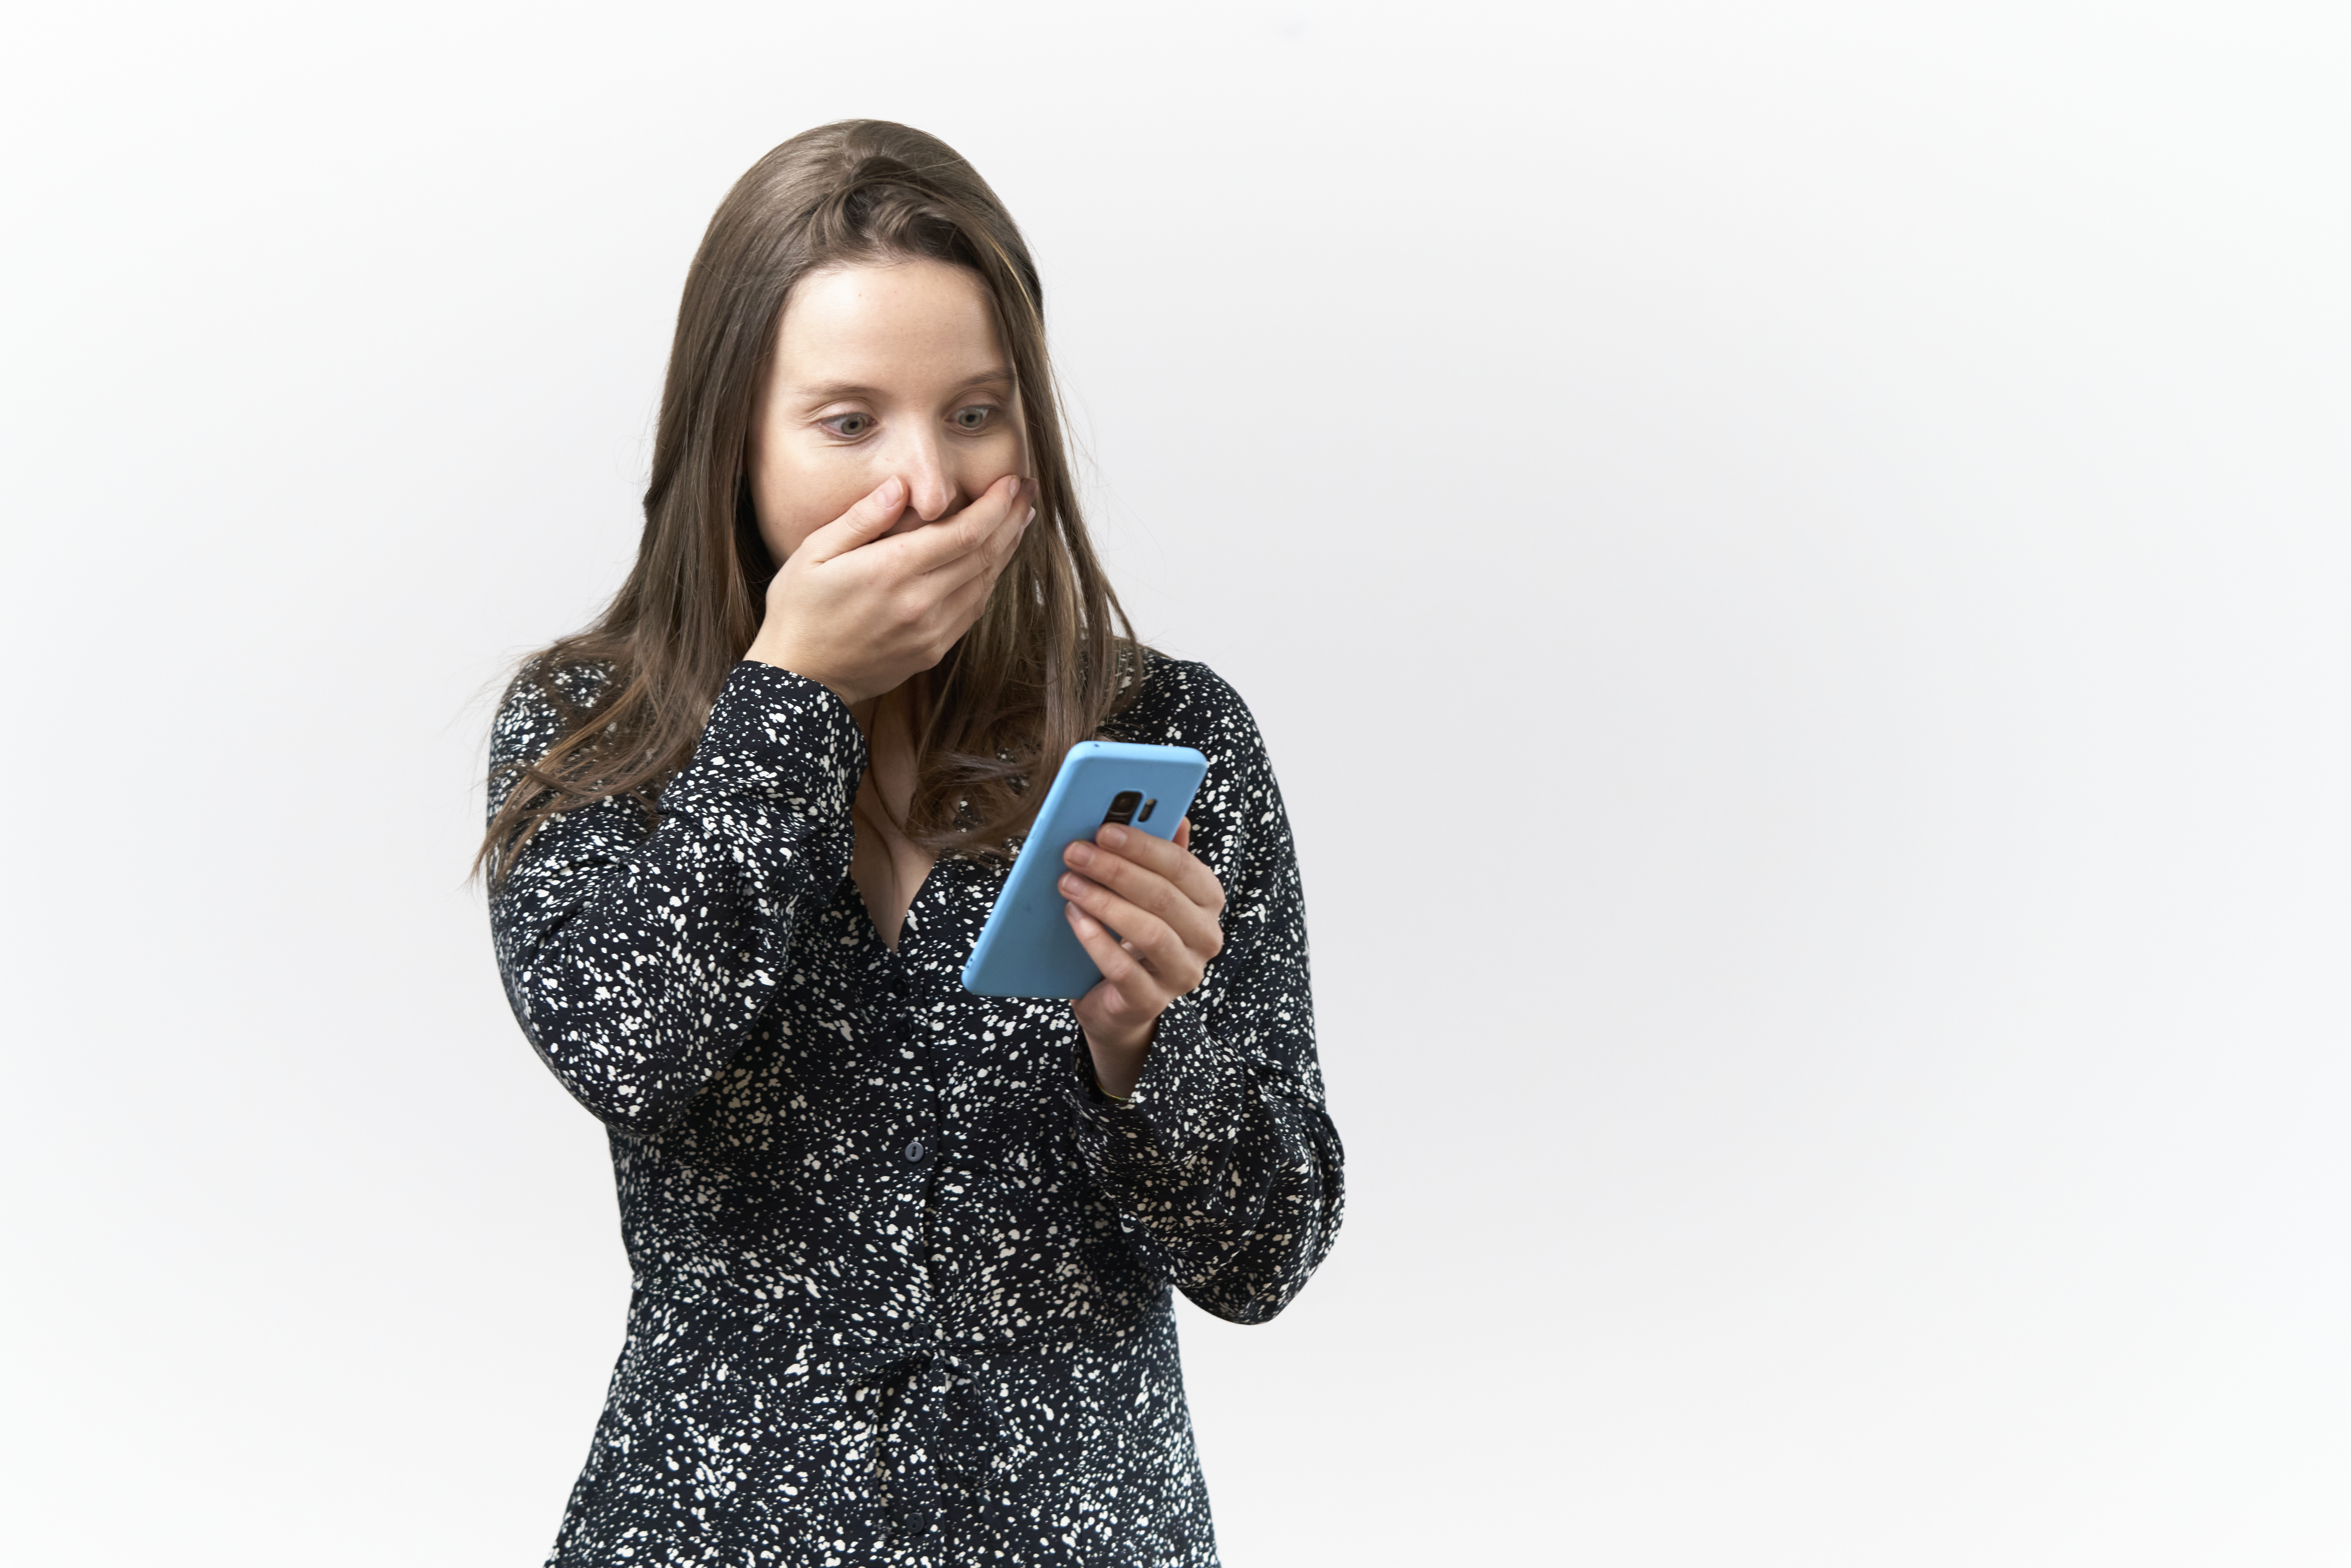 Mujer joven con expresión sorprendida leyendo mensajes en el móvil sobre fondo blanco | Foto: Getty Images